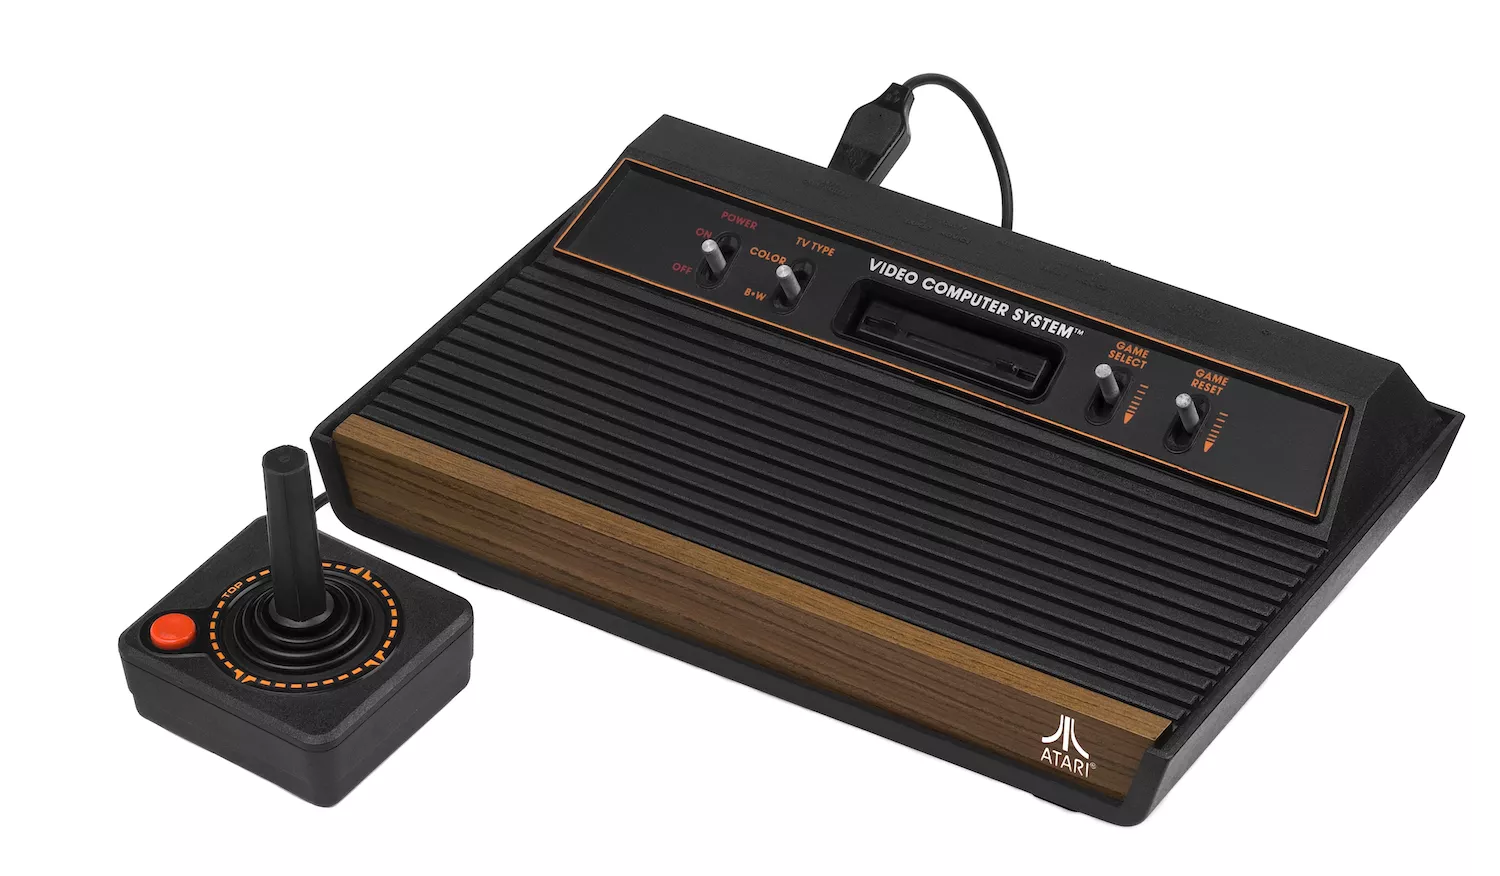 Atari va llançar el primer videojoc amb veritable èxit comercial: el Pong, que simulava de manera naïf una partida de tennis surrealista